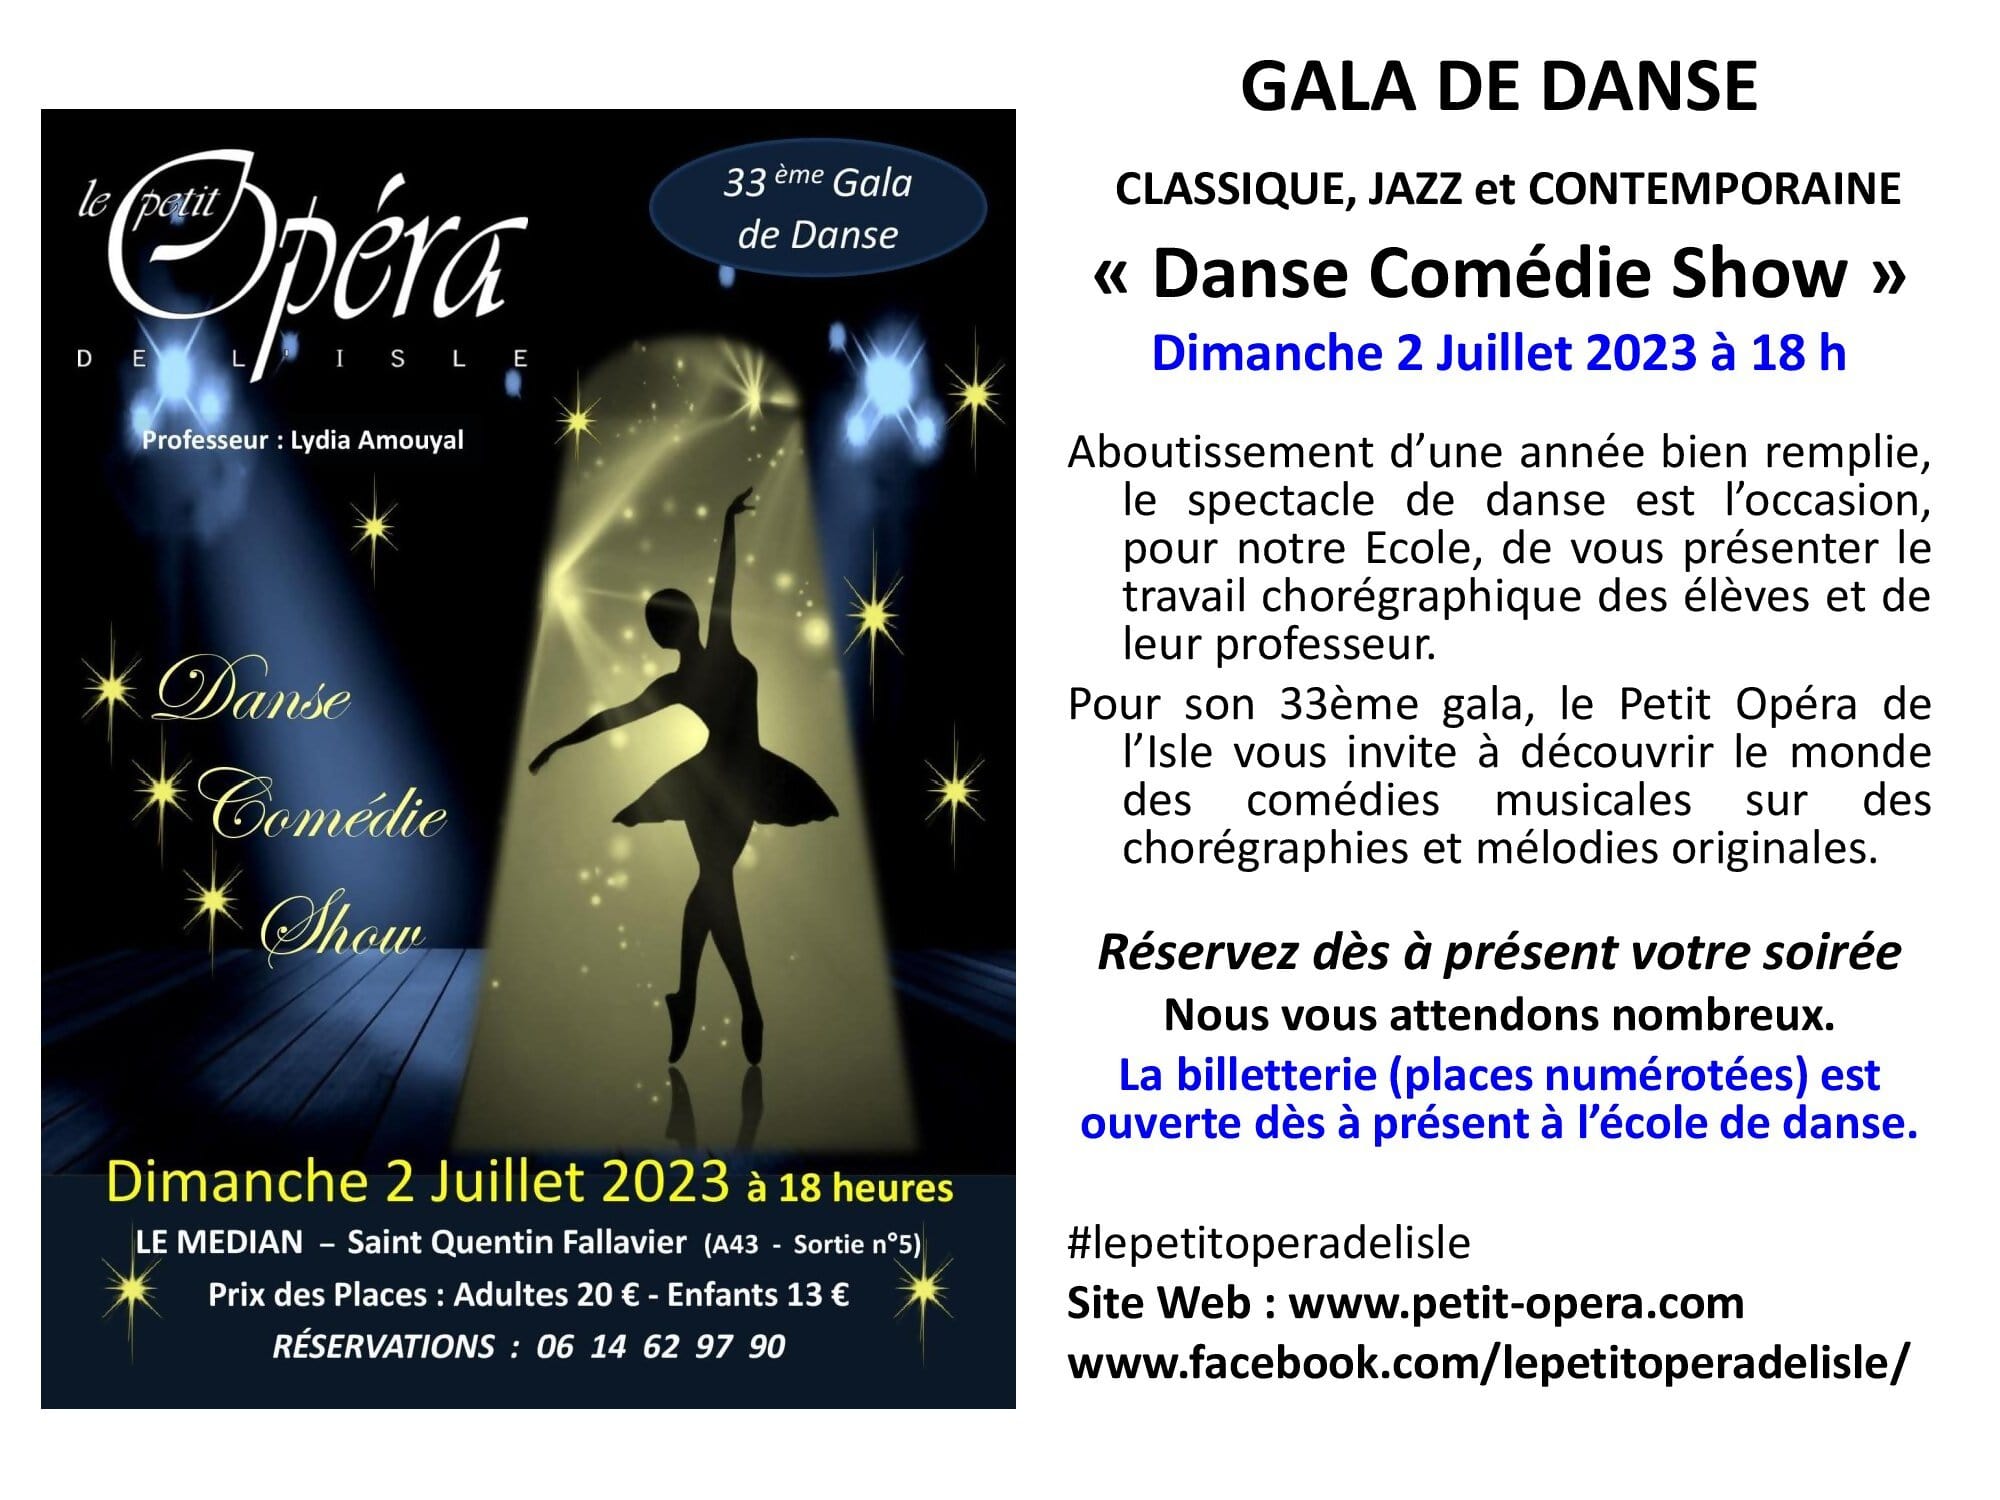 Gala de Danse 2023 Le Petit Opéra de l`Isle